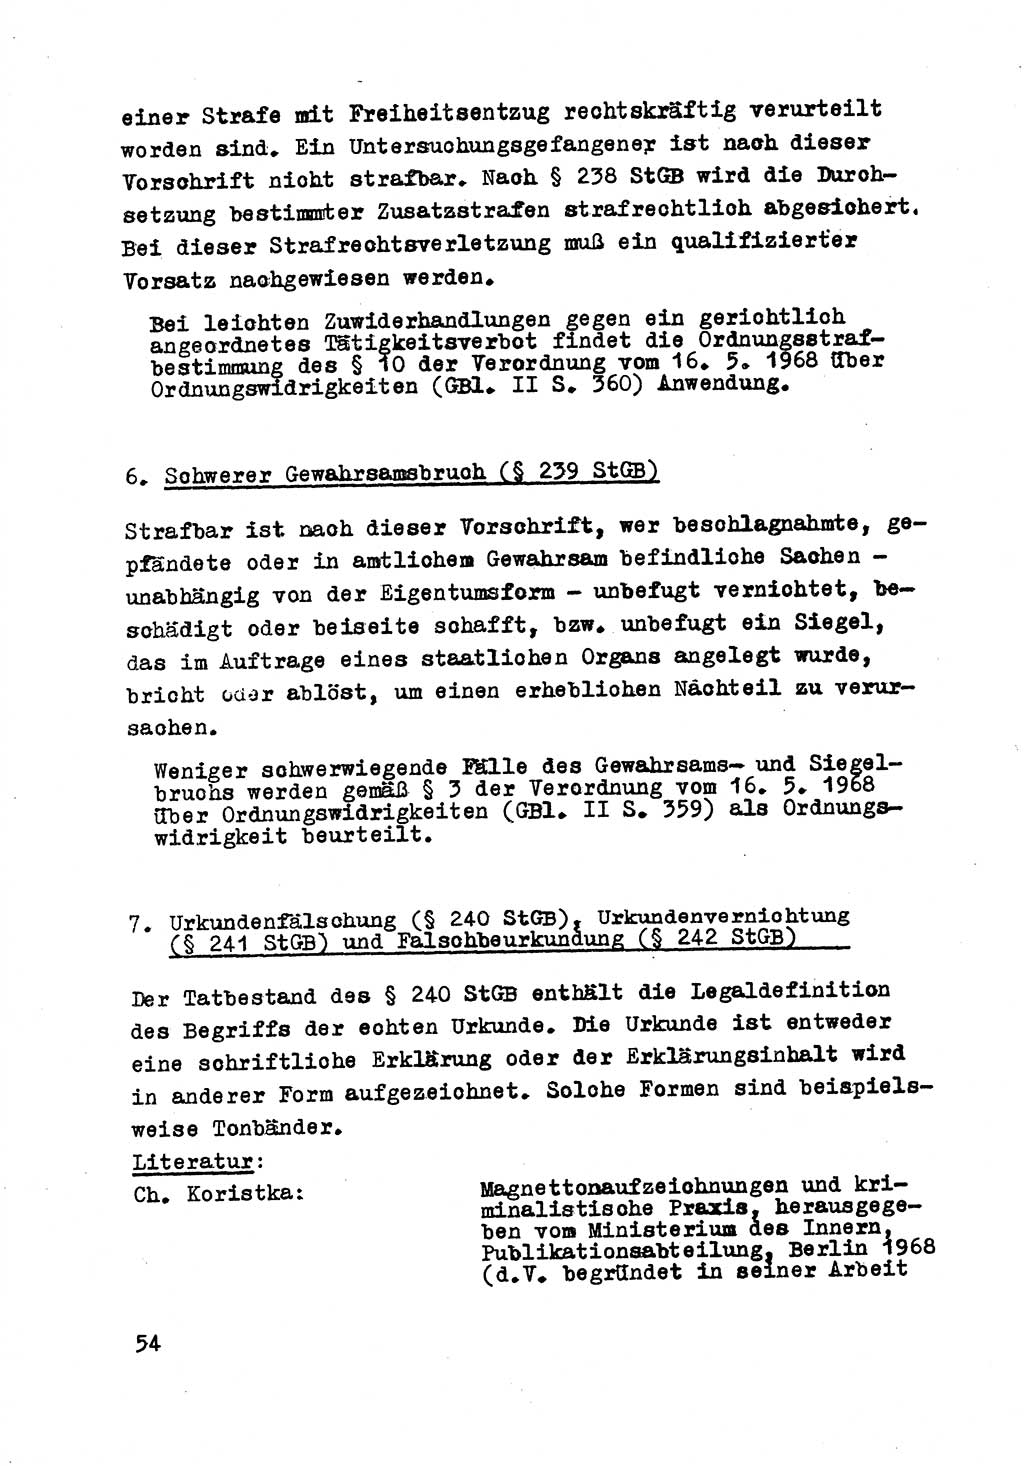 Strafrecht der DDR (Deutsche Demokratische Republik), Besonderer Teil, Lehrmaterial, Heft 8 1970, Seite 54 (Strafr. DDR BT Lehrmat. H. 8 1970, S. 54)